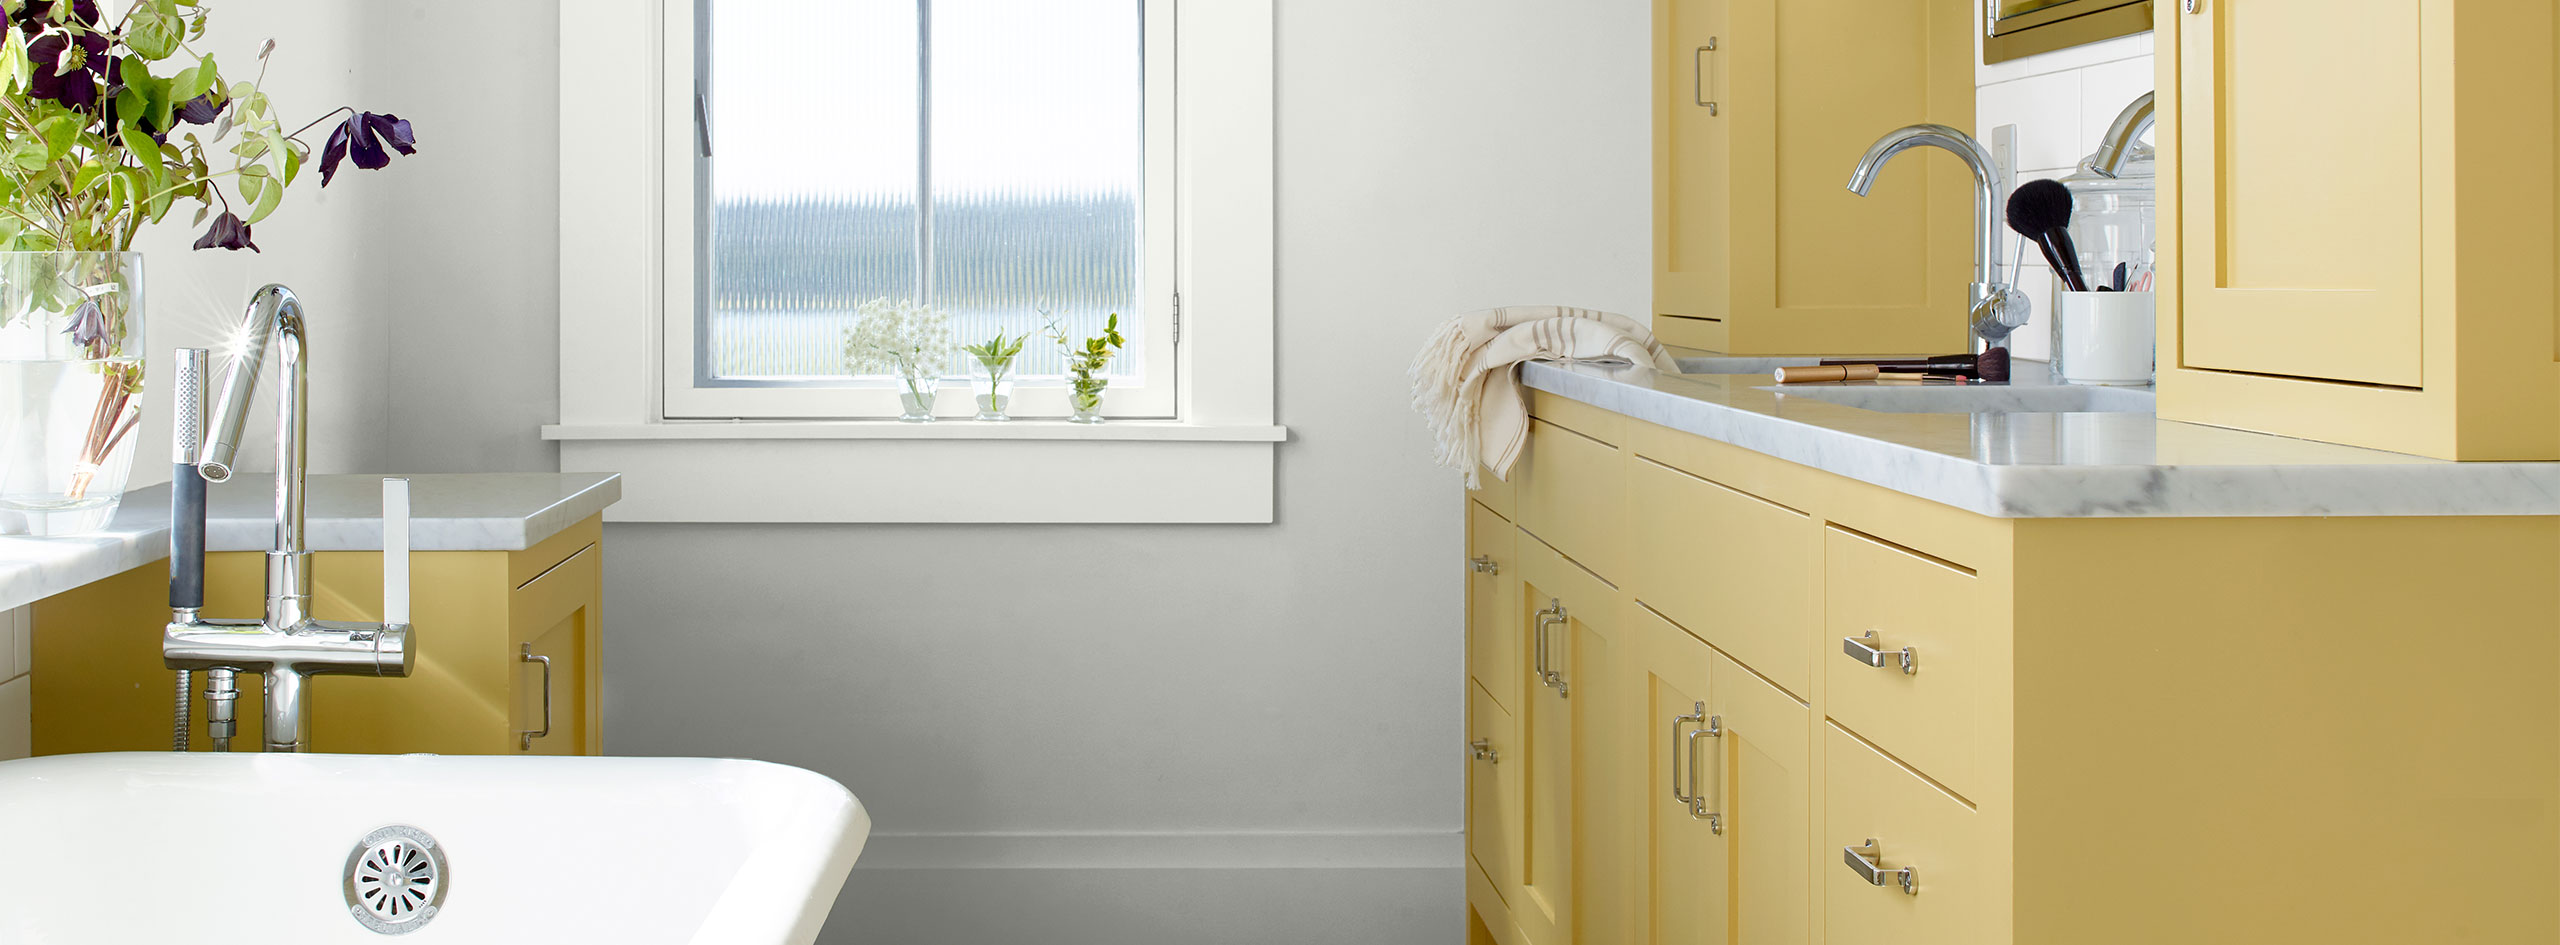 Une salle de bain moderne de style ferme avec des murs blanc cassé, des garnitures de fenêtre blanches et des armoires peintes en jaune doux avec des armoires en argent et des poignées de tiroir.